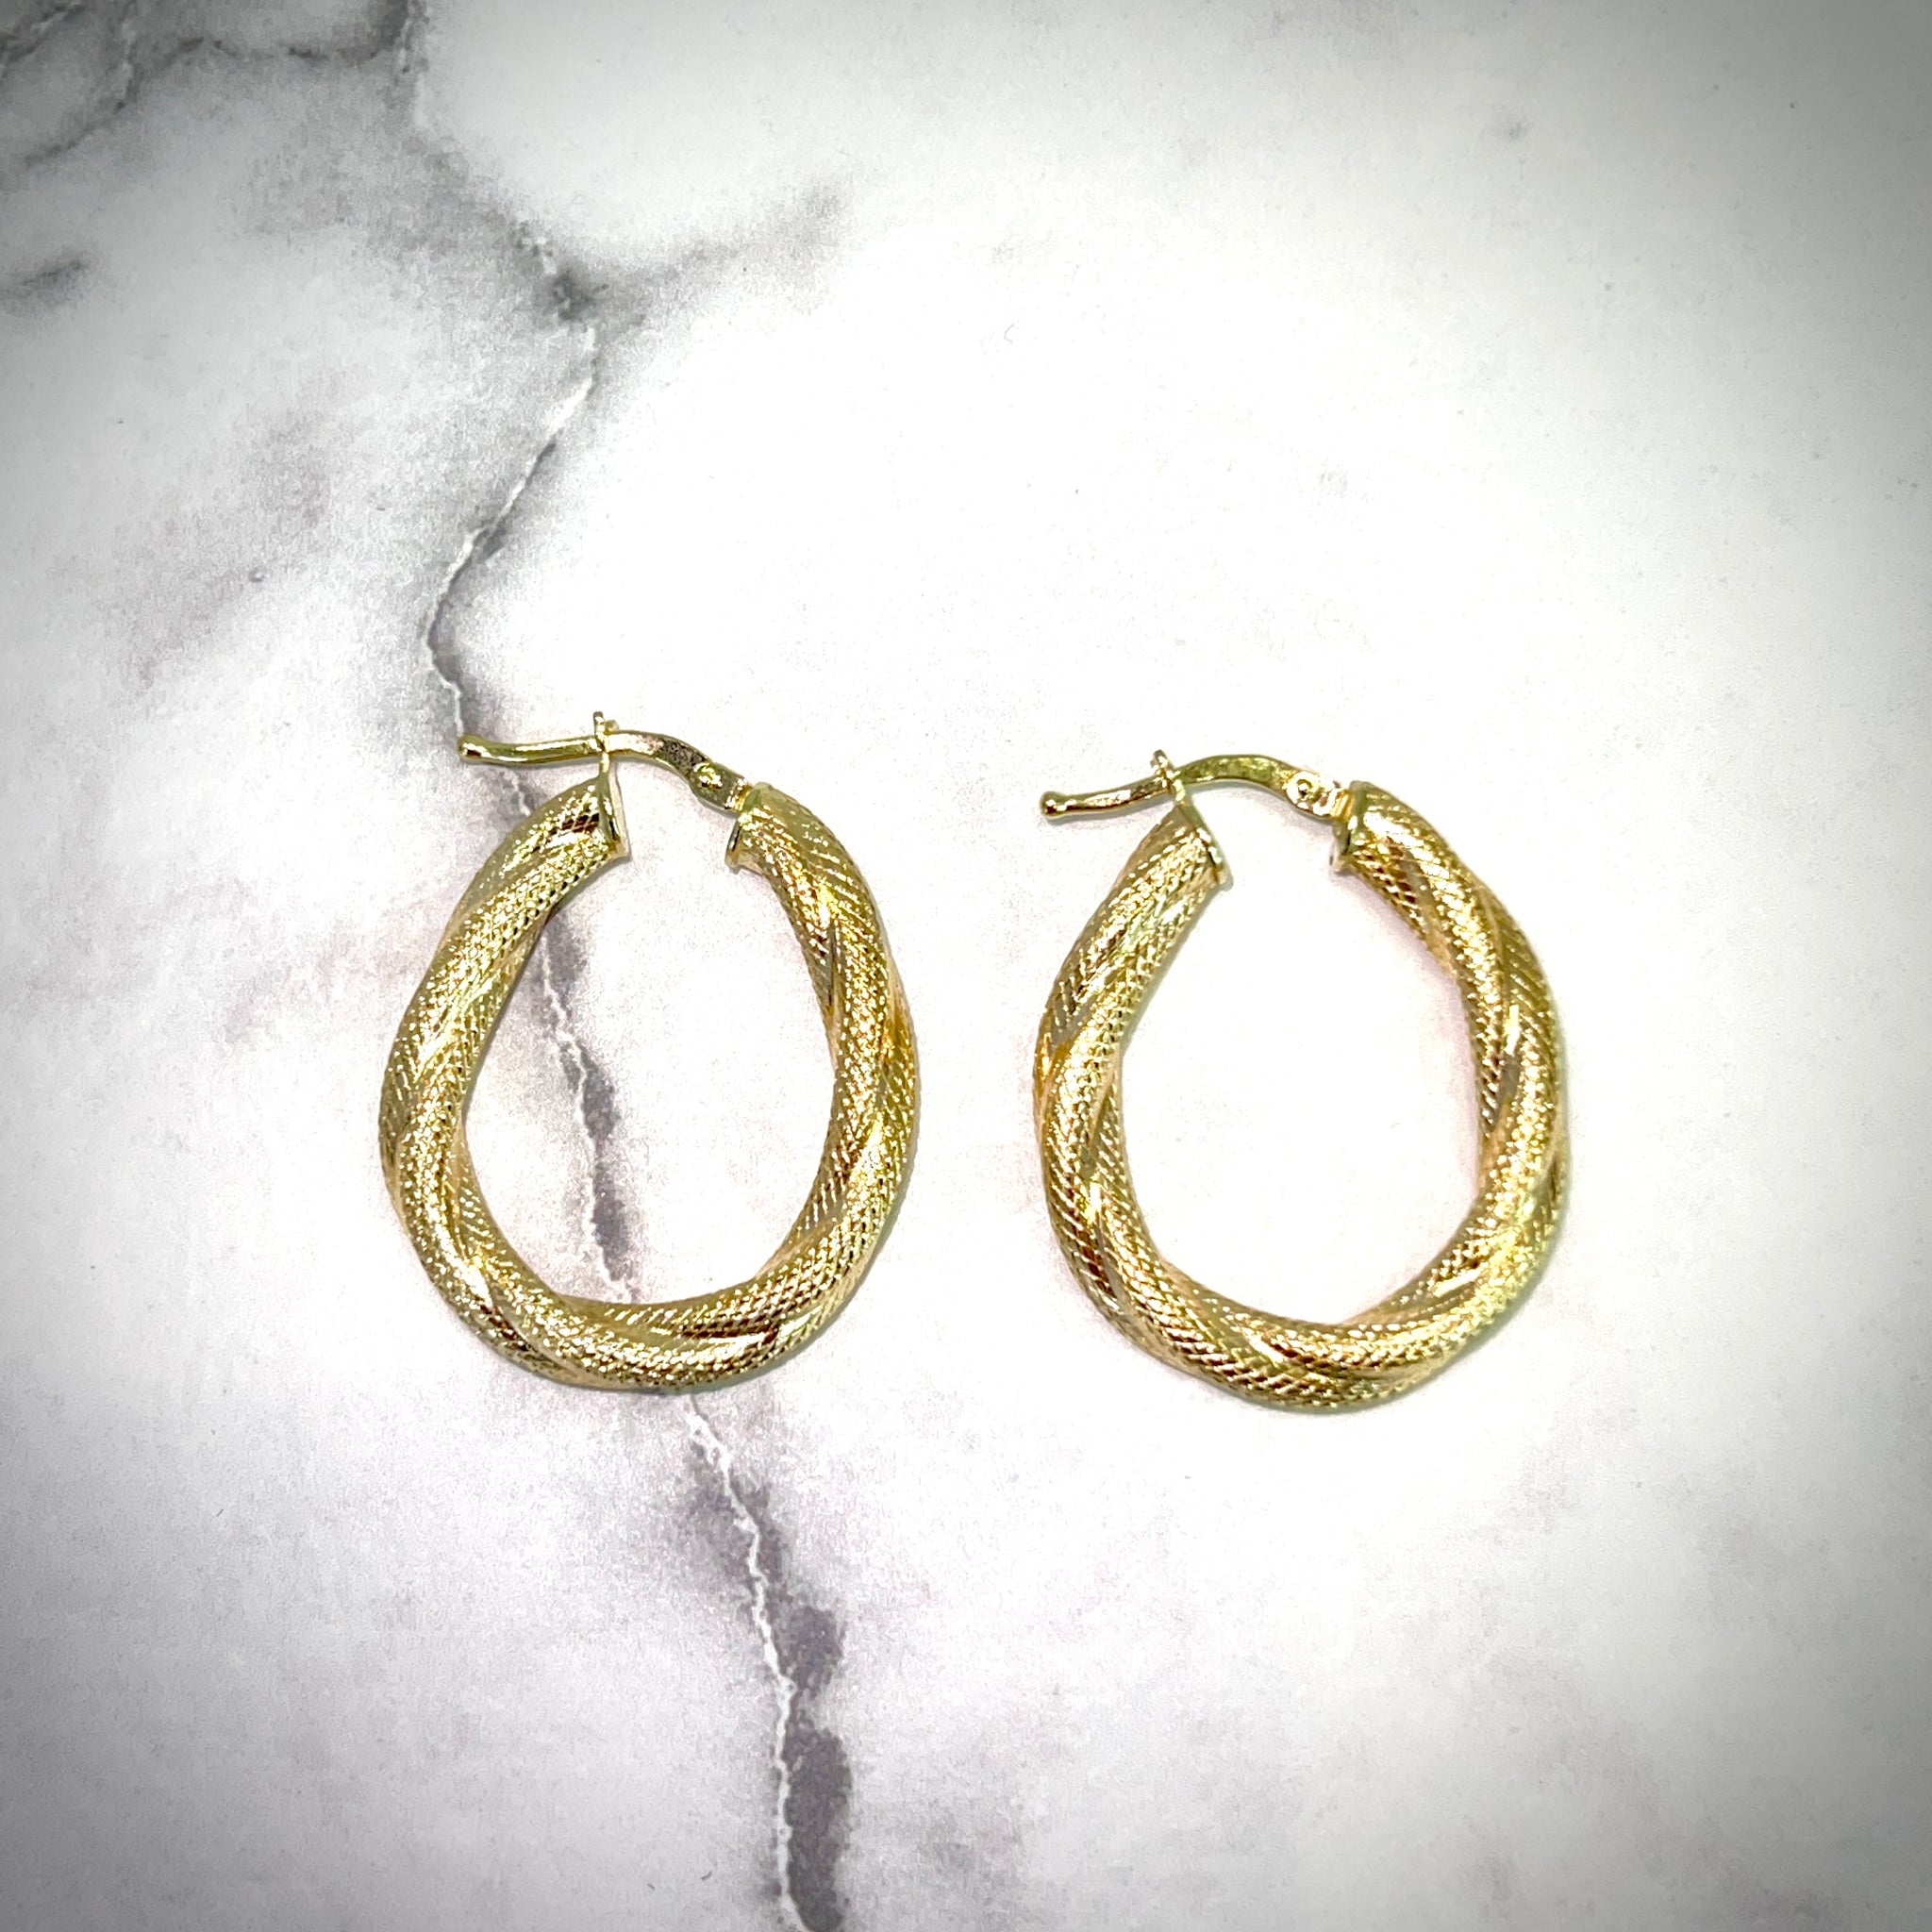 Rope Hoops Earrings - 18 carat gold